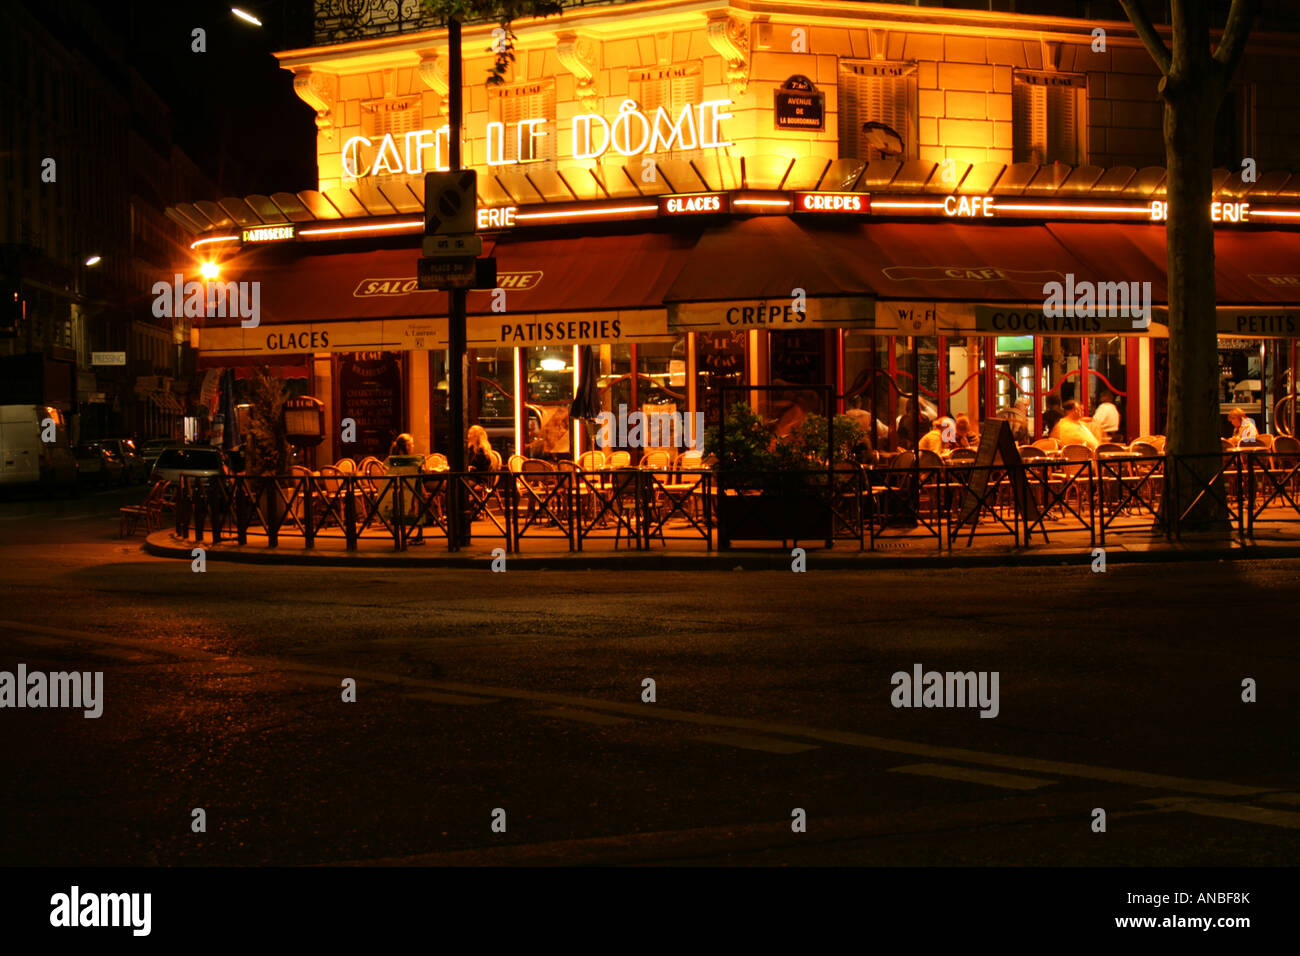 Cafe Le Dome, Paris Stock Photo